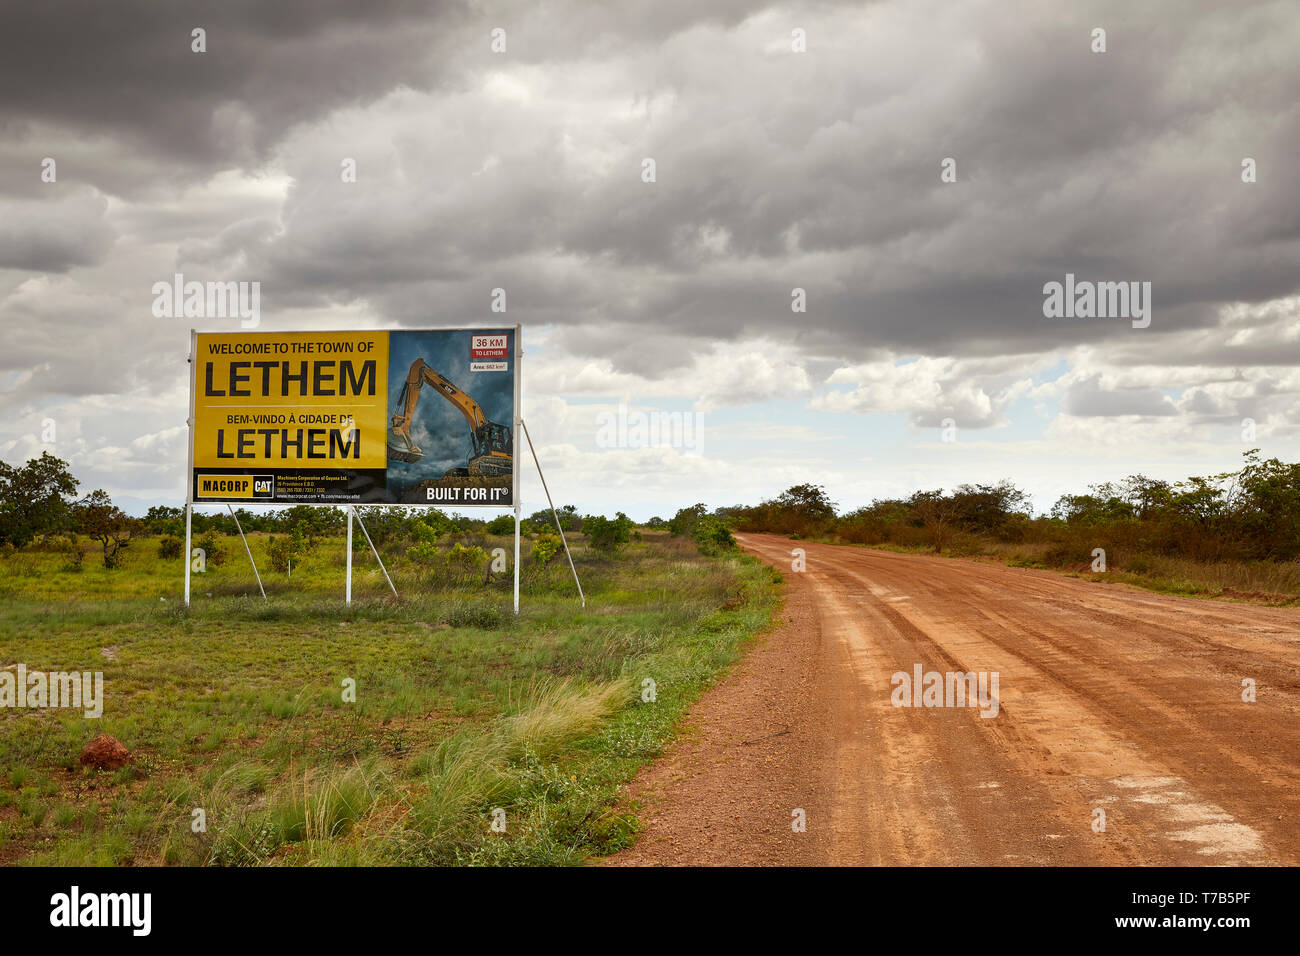 Bienvenido a la ciudad de Lethem, firme en la carretera Linden-Lethem en Guyana América del Sur Foto de stock